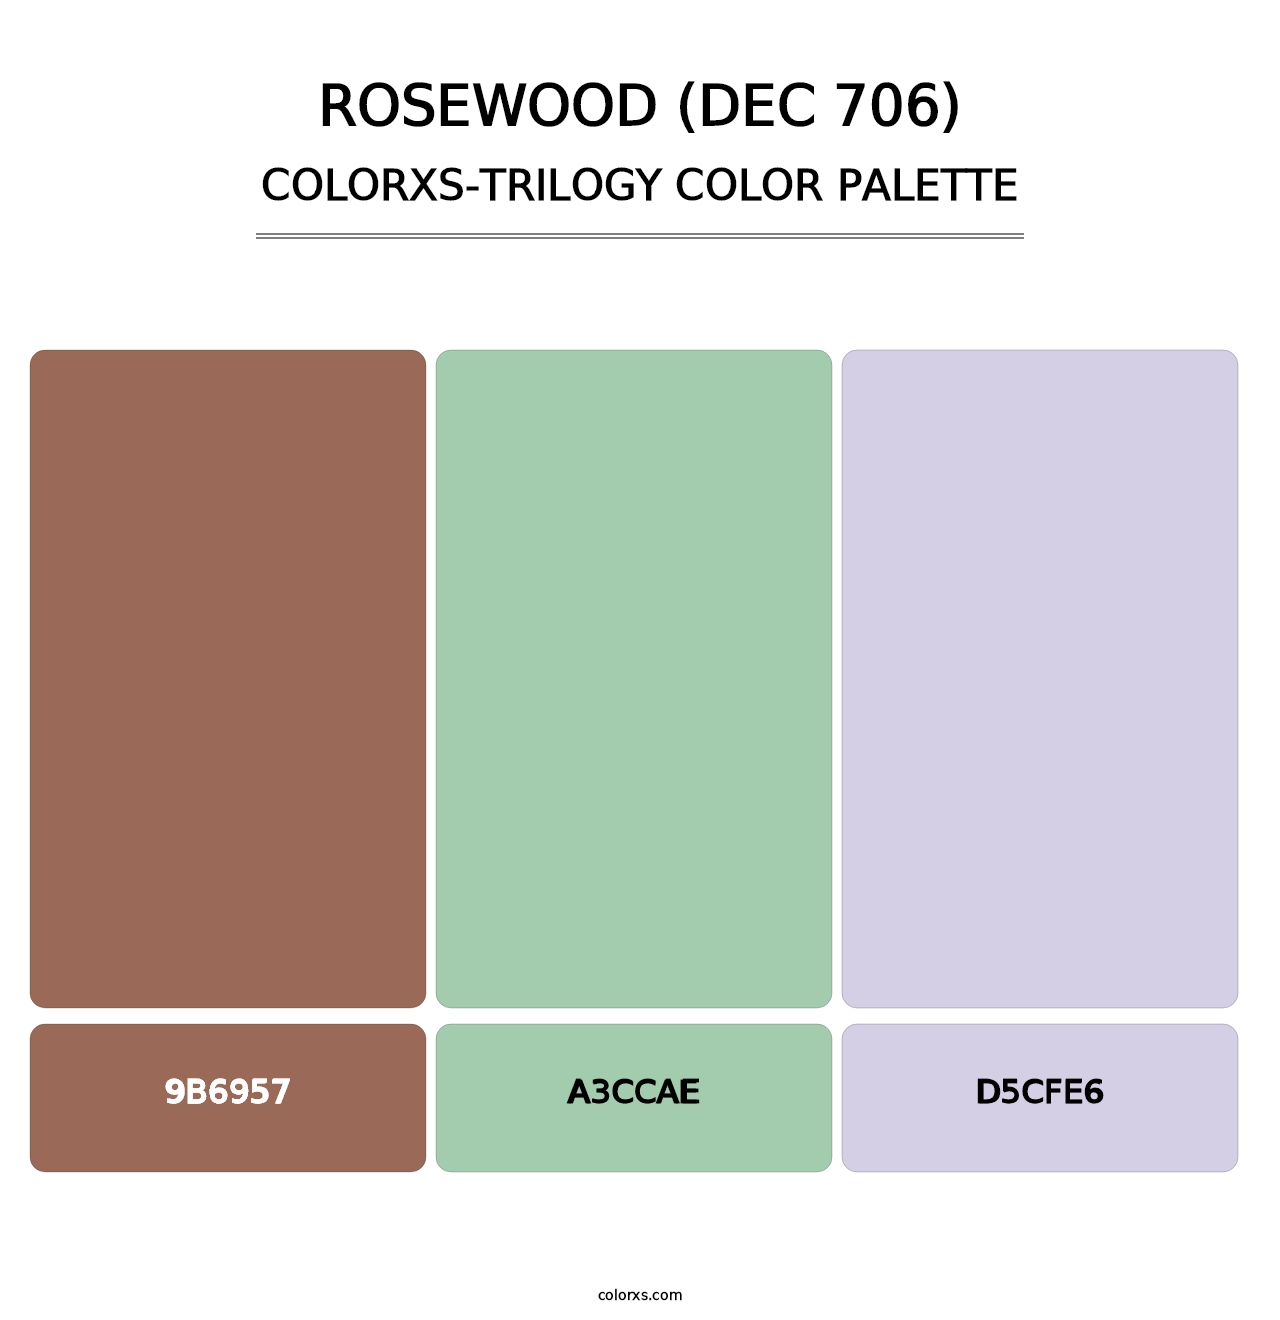 Rosewood (DEC 706) - Colorxs Trilogy Palette